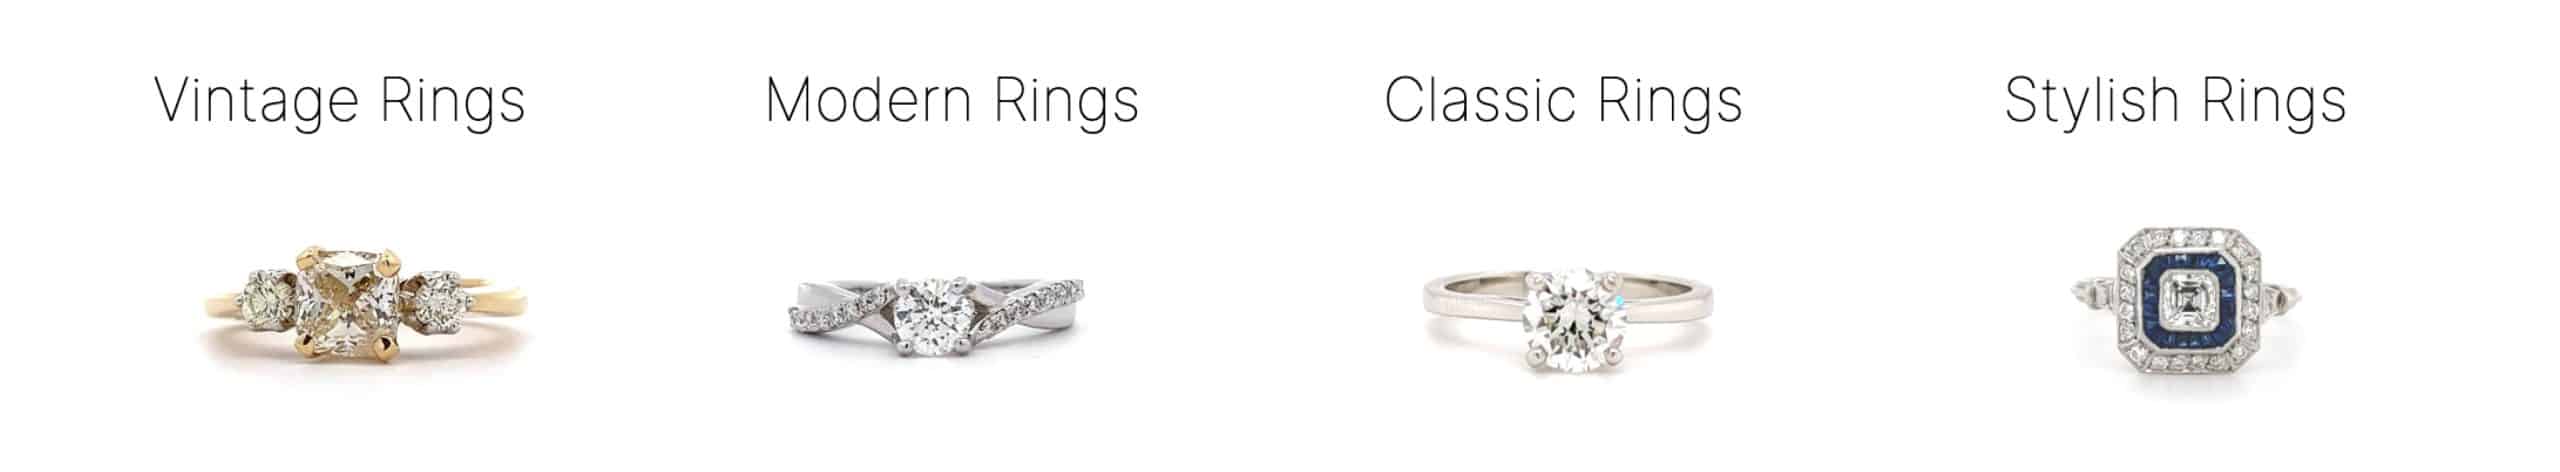 ring types